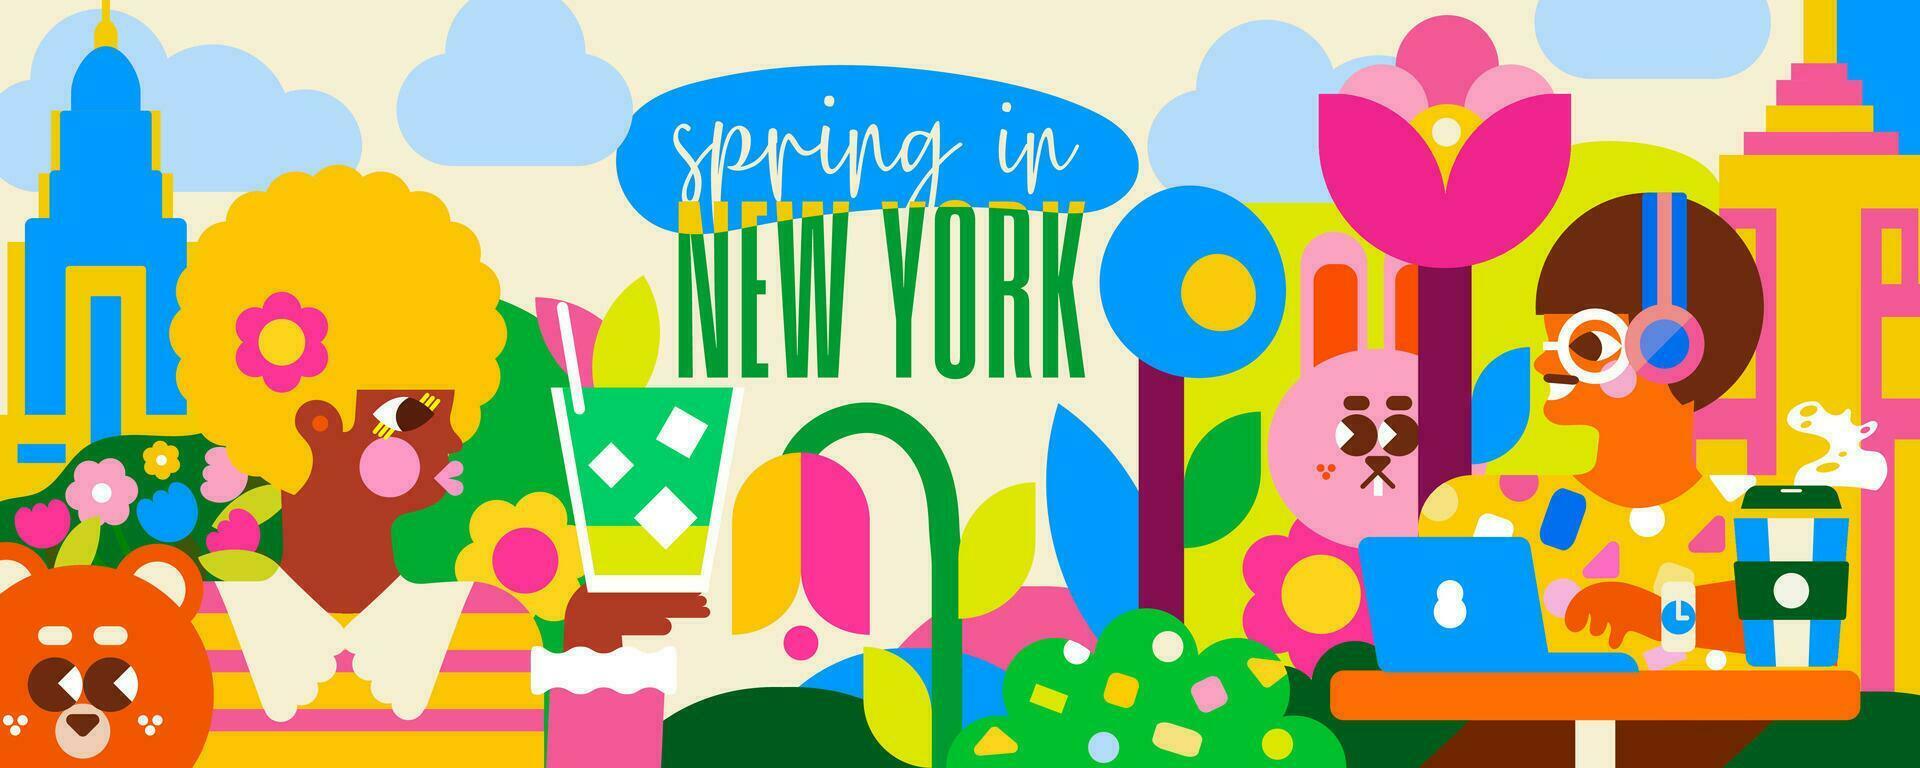 onderdompelen jezelf in voorjaar in nieuw york met deze levendig illustratie. voelen de energie van de stad tussen de mensen, de groen park en de beroemd wolkenkrabbers. vector